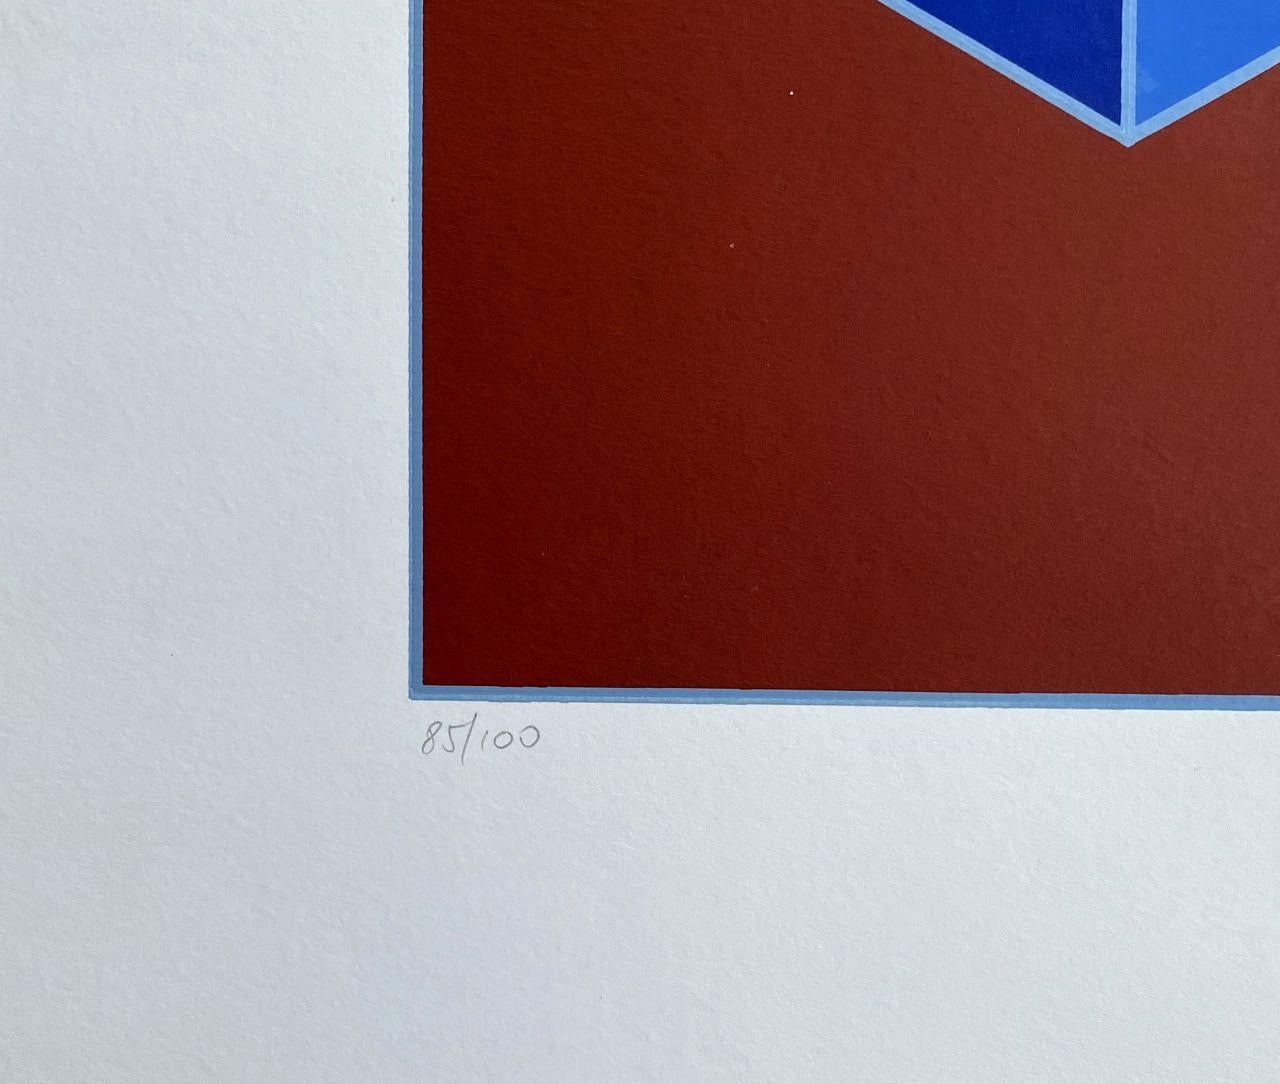 Victor VASARELY
Sylla-6

Siebdruck
Handsigniert mit Feder vom Künstler
Mit Bleistift nummeriert auf /100 Exemplaren
Auf Pergament im Format 49 x 69 cm (ca. 19 x 27 in)
Sehr guter Zustand 

REFERENZ : Werkverzeichnis Benavides 904